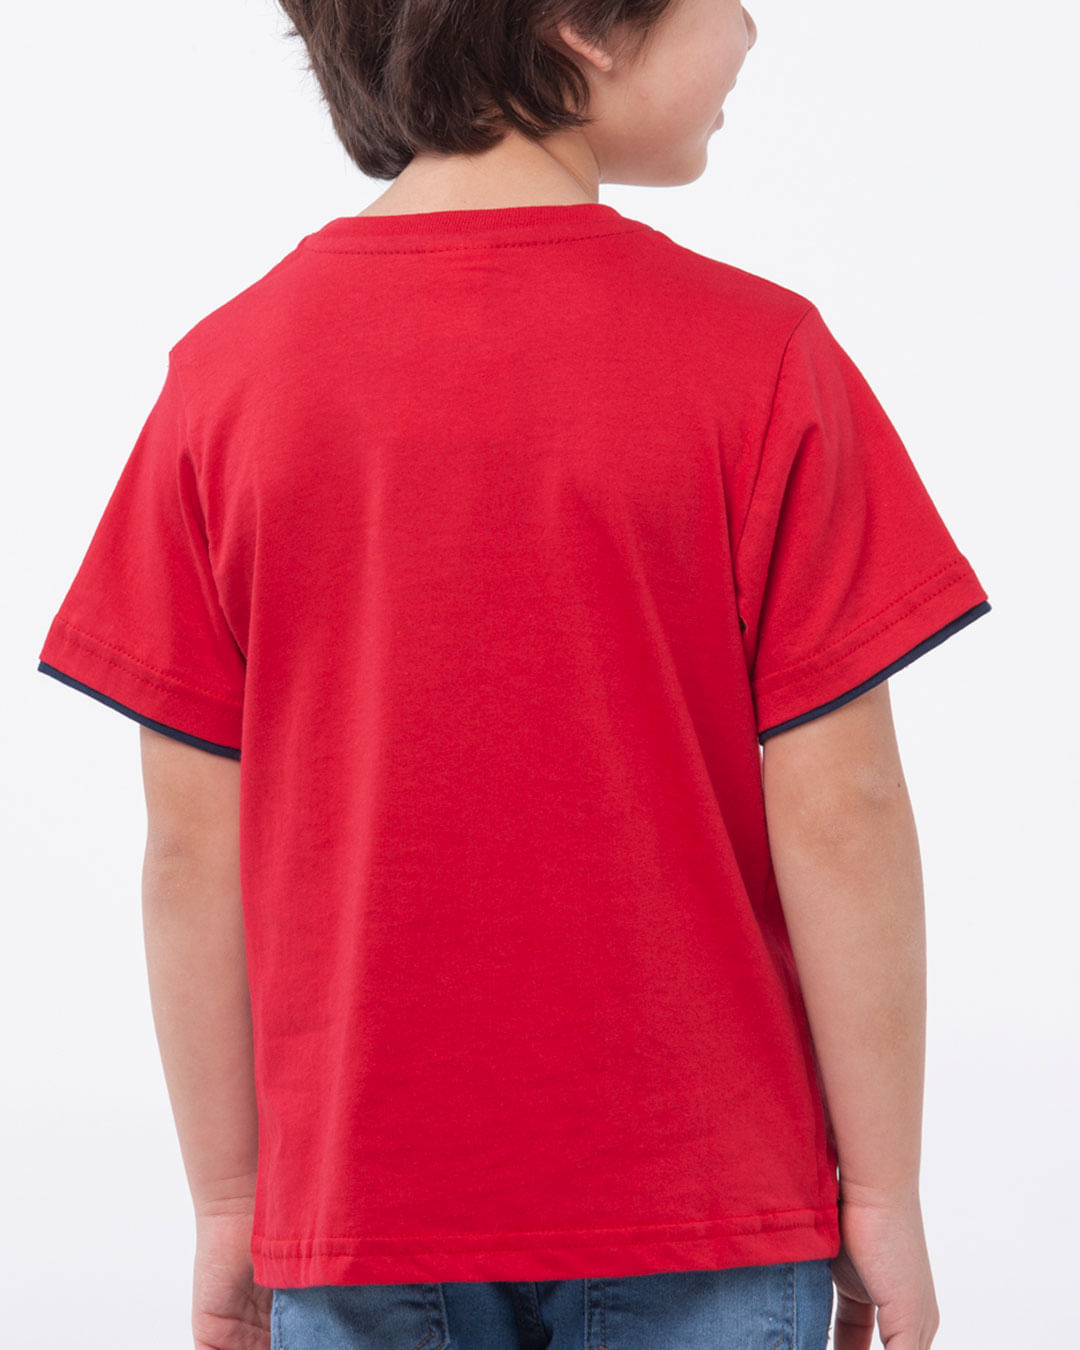 Camiseta-Infantil-Malha-Manga-Curta-Let-S-Play-Vermelho